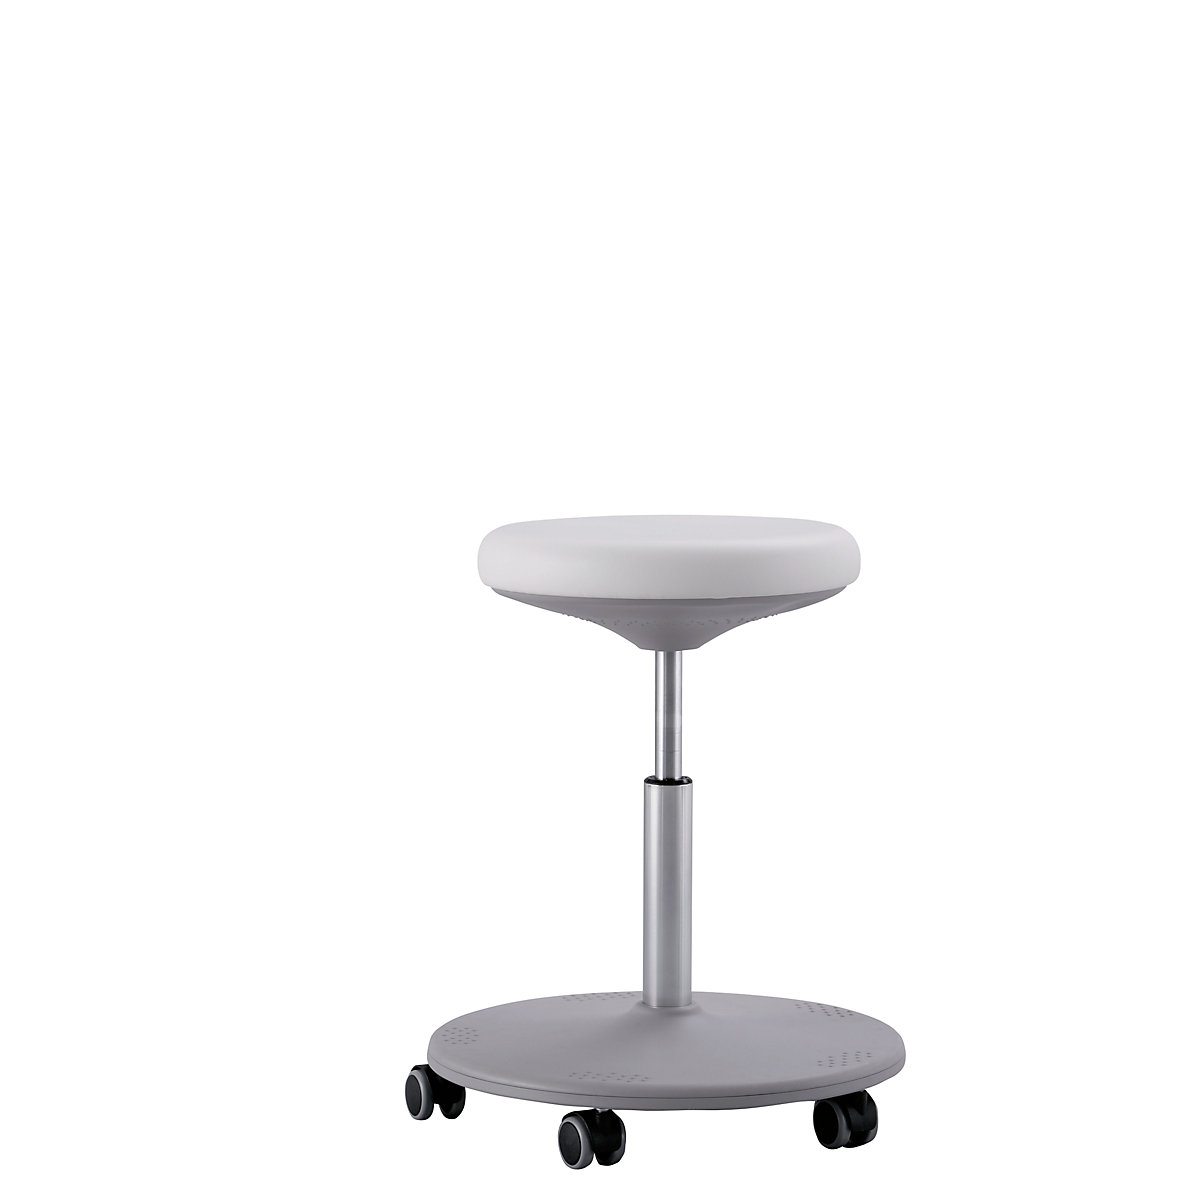 Pracovní stolička pro laboratoře, rozsah přestavování výšky 460 - 650 mm - bimos